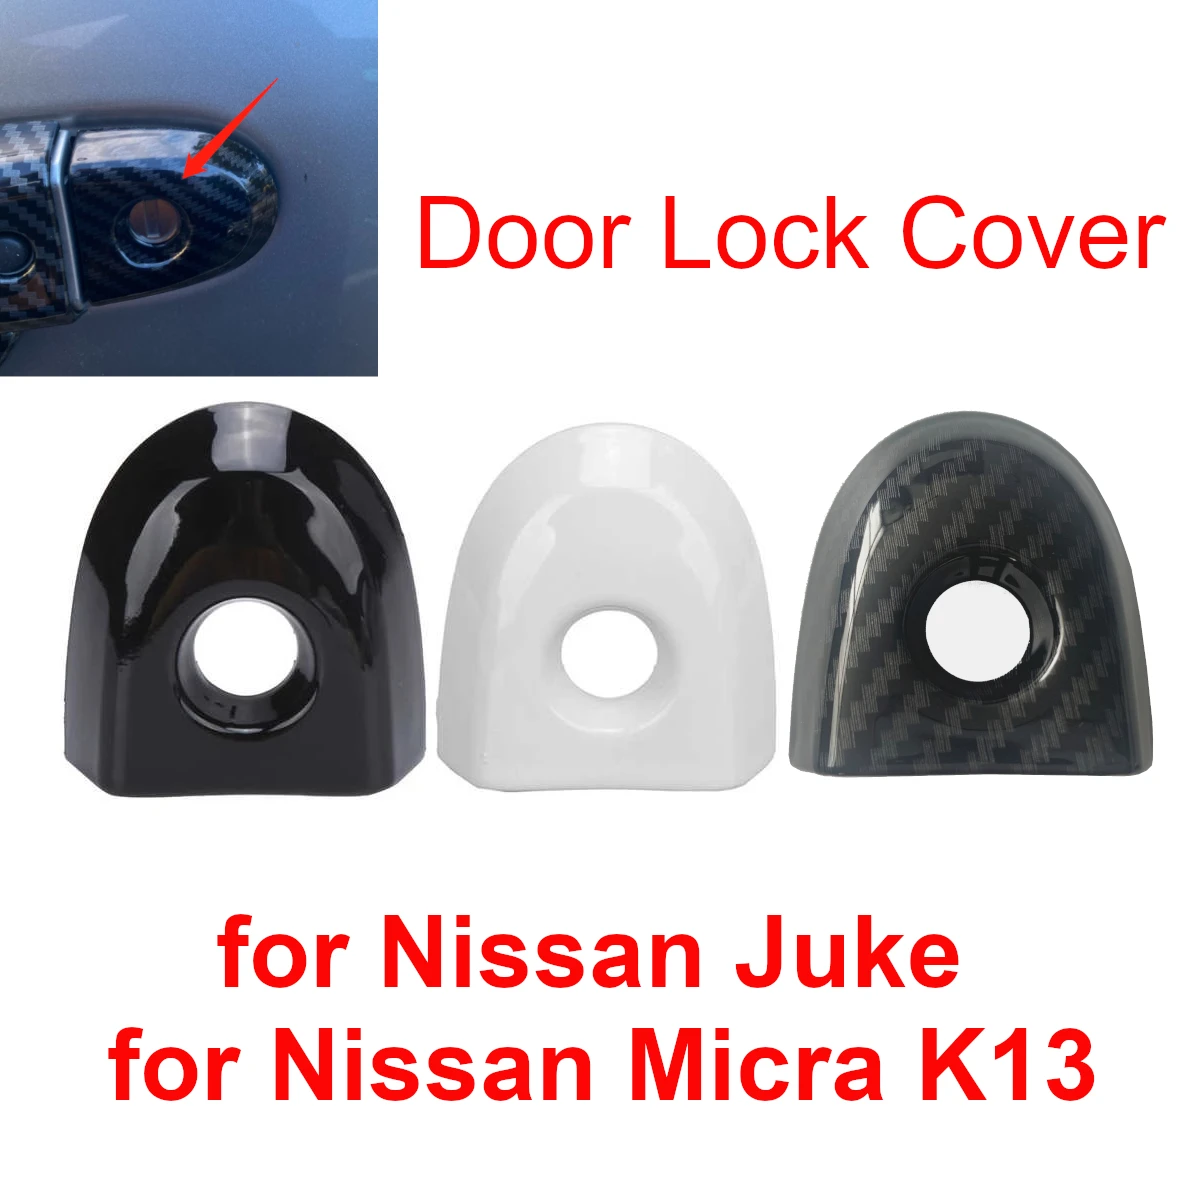 Araba Sürücü Kapı Kilidi katlanır anahtar Delik Kapağı Nissan Juke Micra için K13 806441KK0D Beyaz Siyah Karbon Fiber Desen